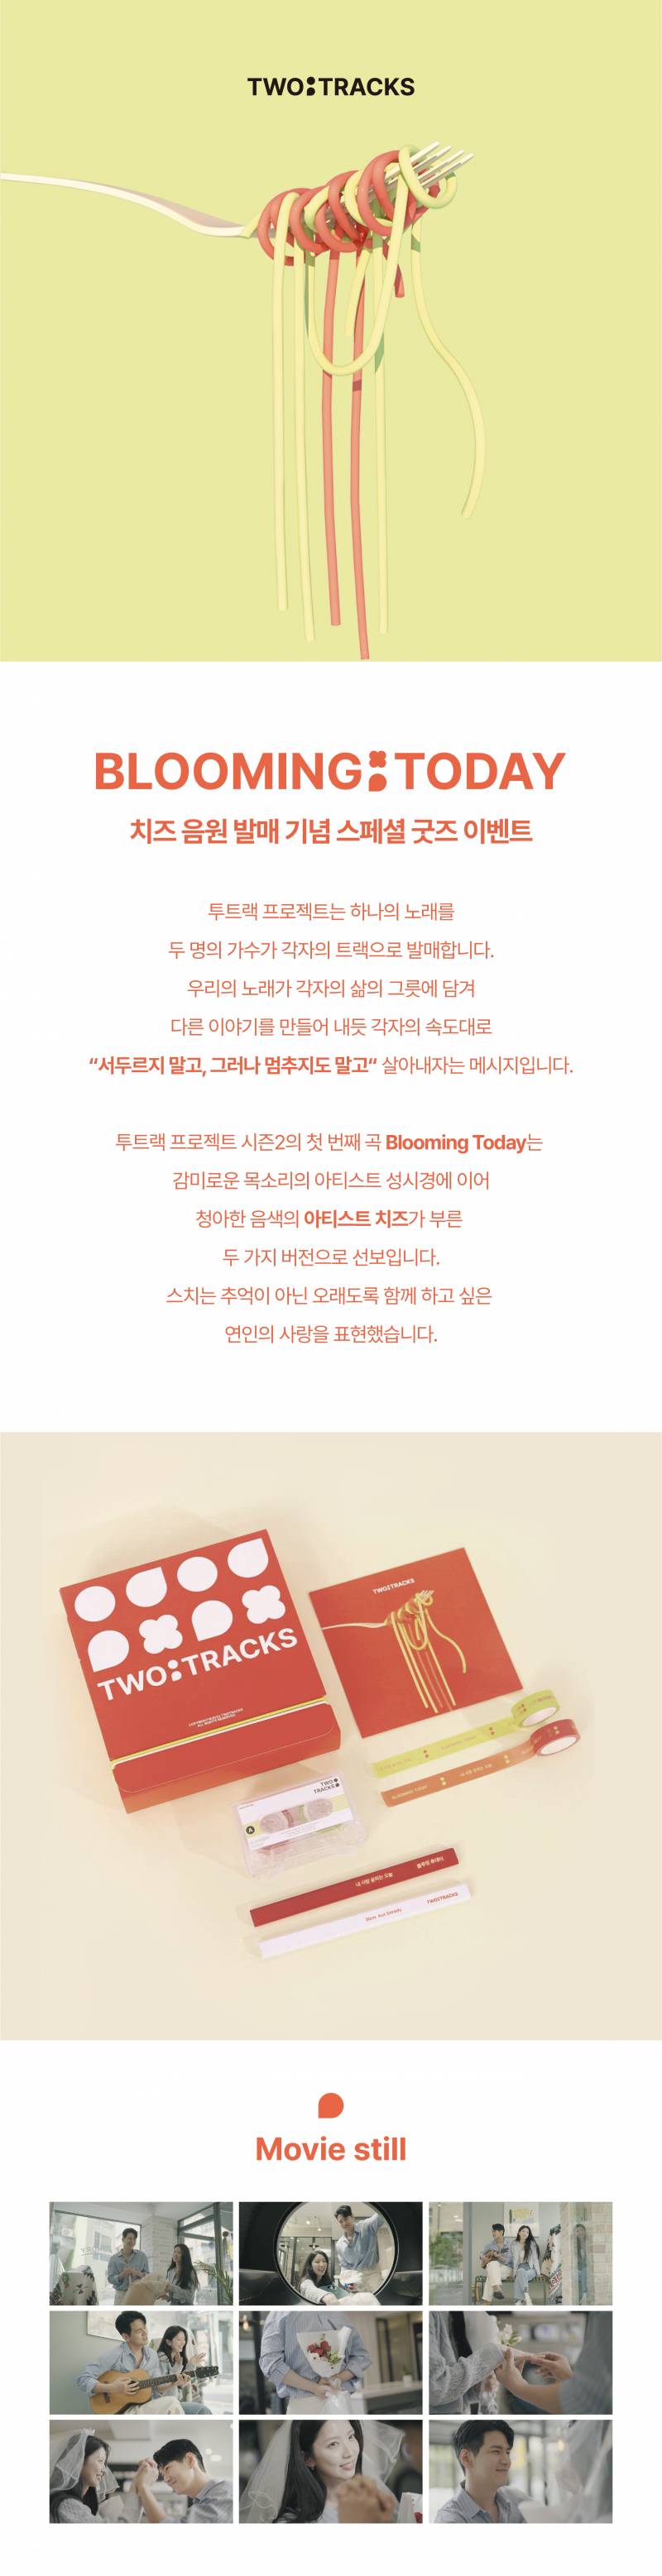 치즈 (CHEEZE) 'Blooming Today' 음원 발매 기념 스페셜 굿즈 증정 이벤트 | 인스티즈